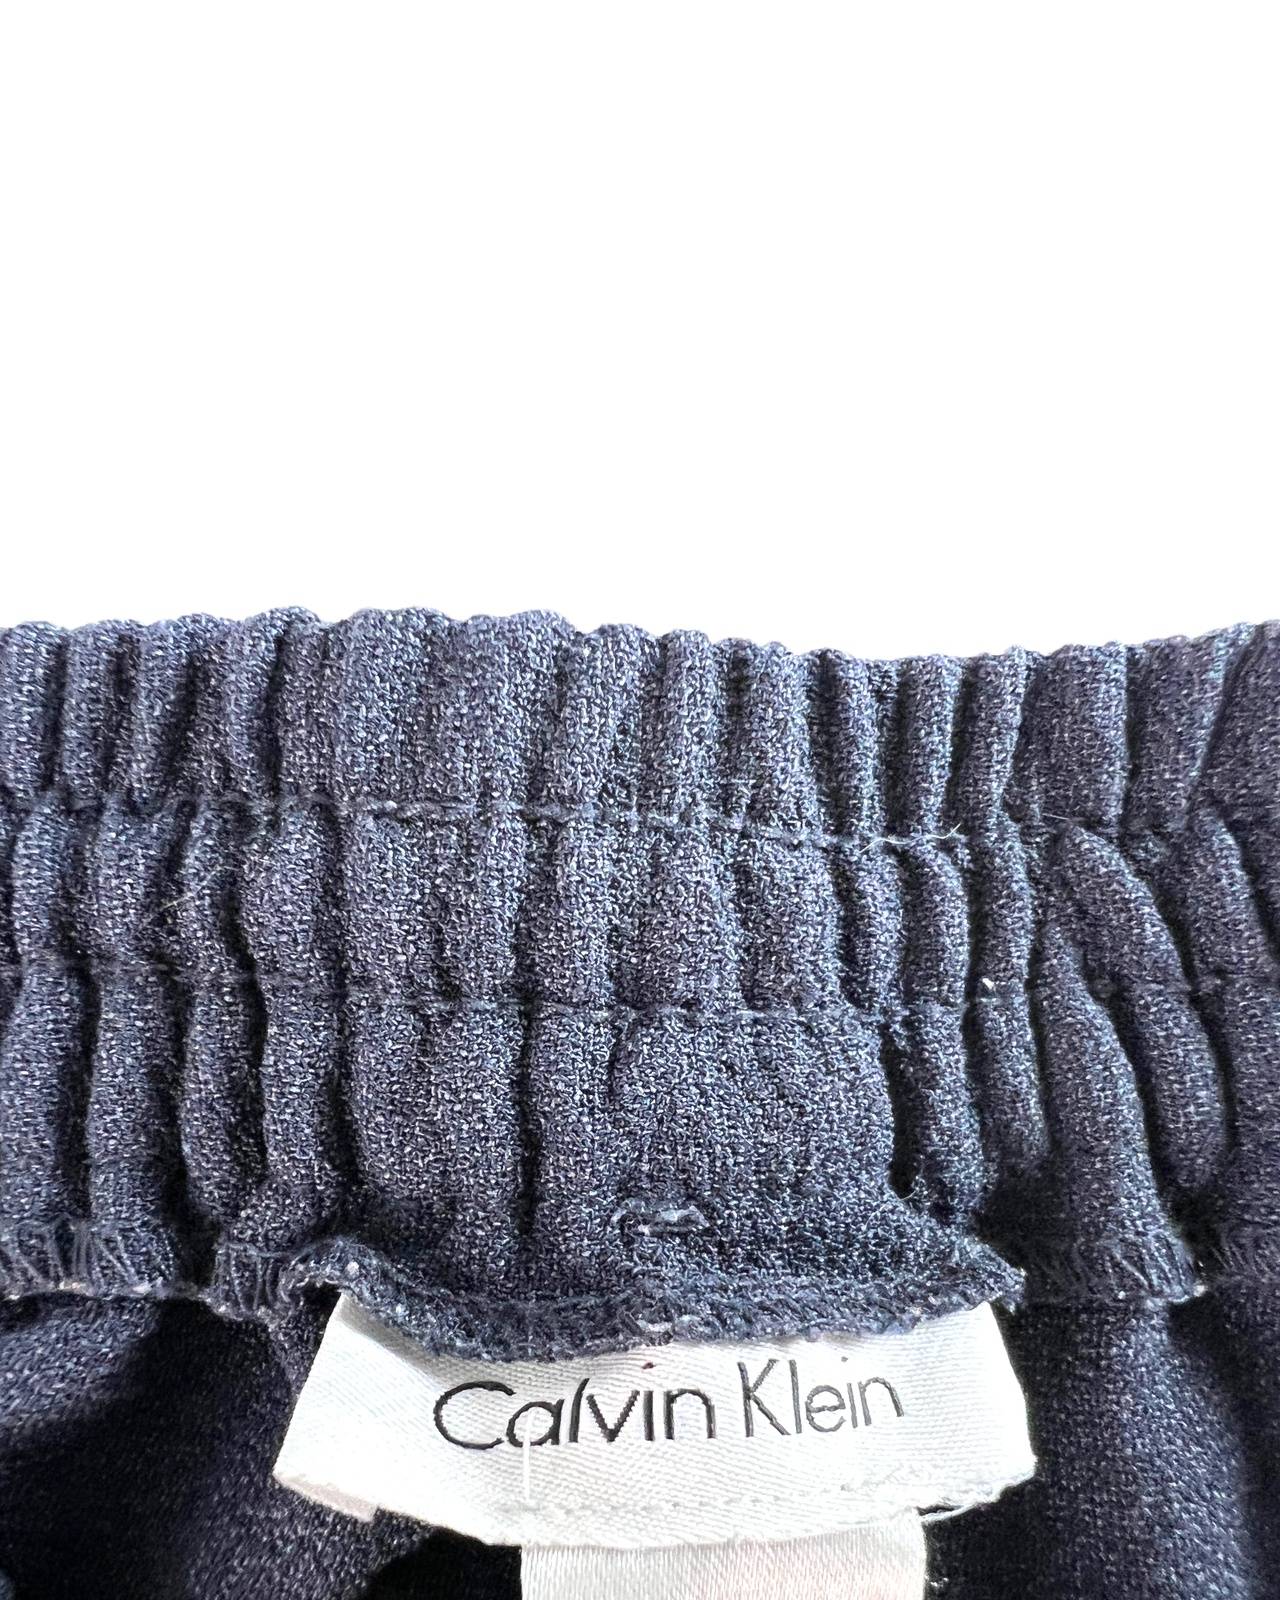 Pantalón Calvin Klein t. M